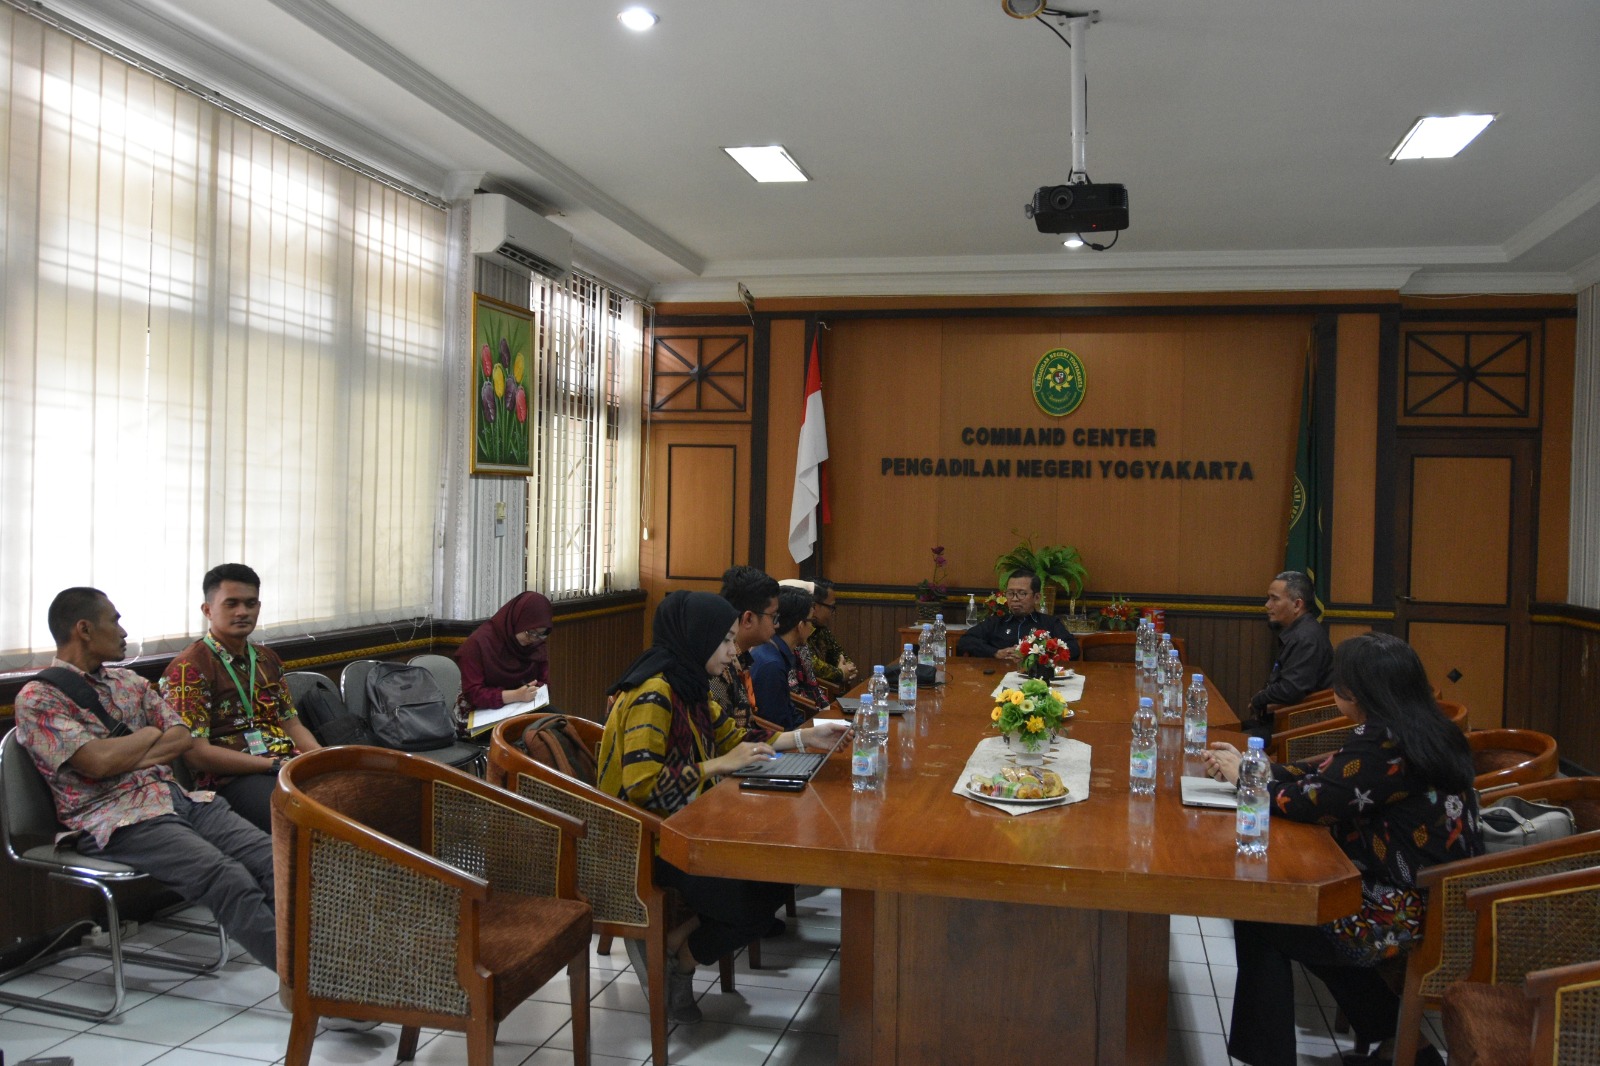 Pengadilan Negeri Yogyakarta Mendapatkan Kunjungan dari Tim Biro Perencanaan dan Organisasi dan Tim Puslitbang Kumdil Mahkamah Agung RI